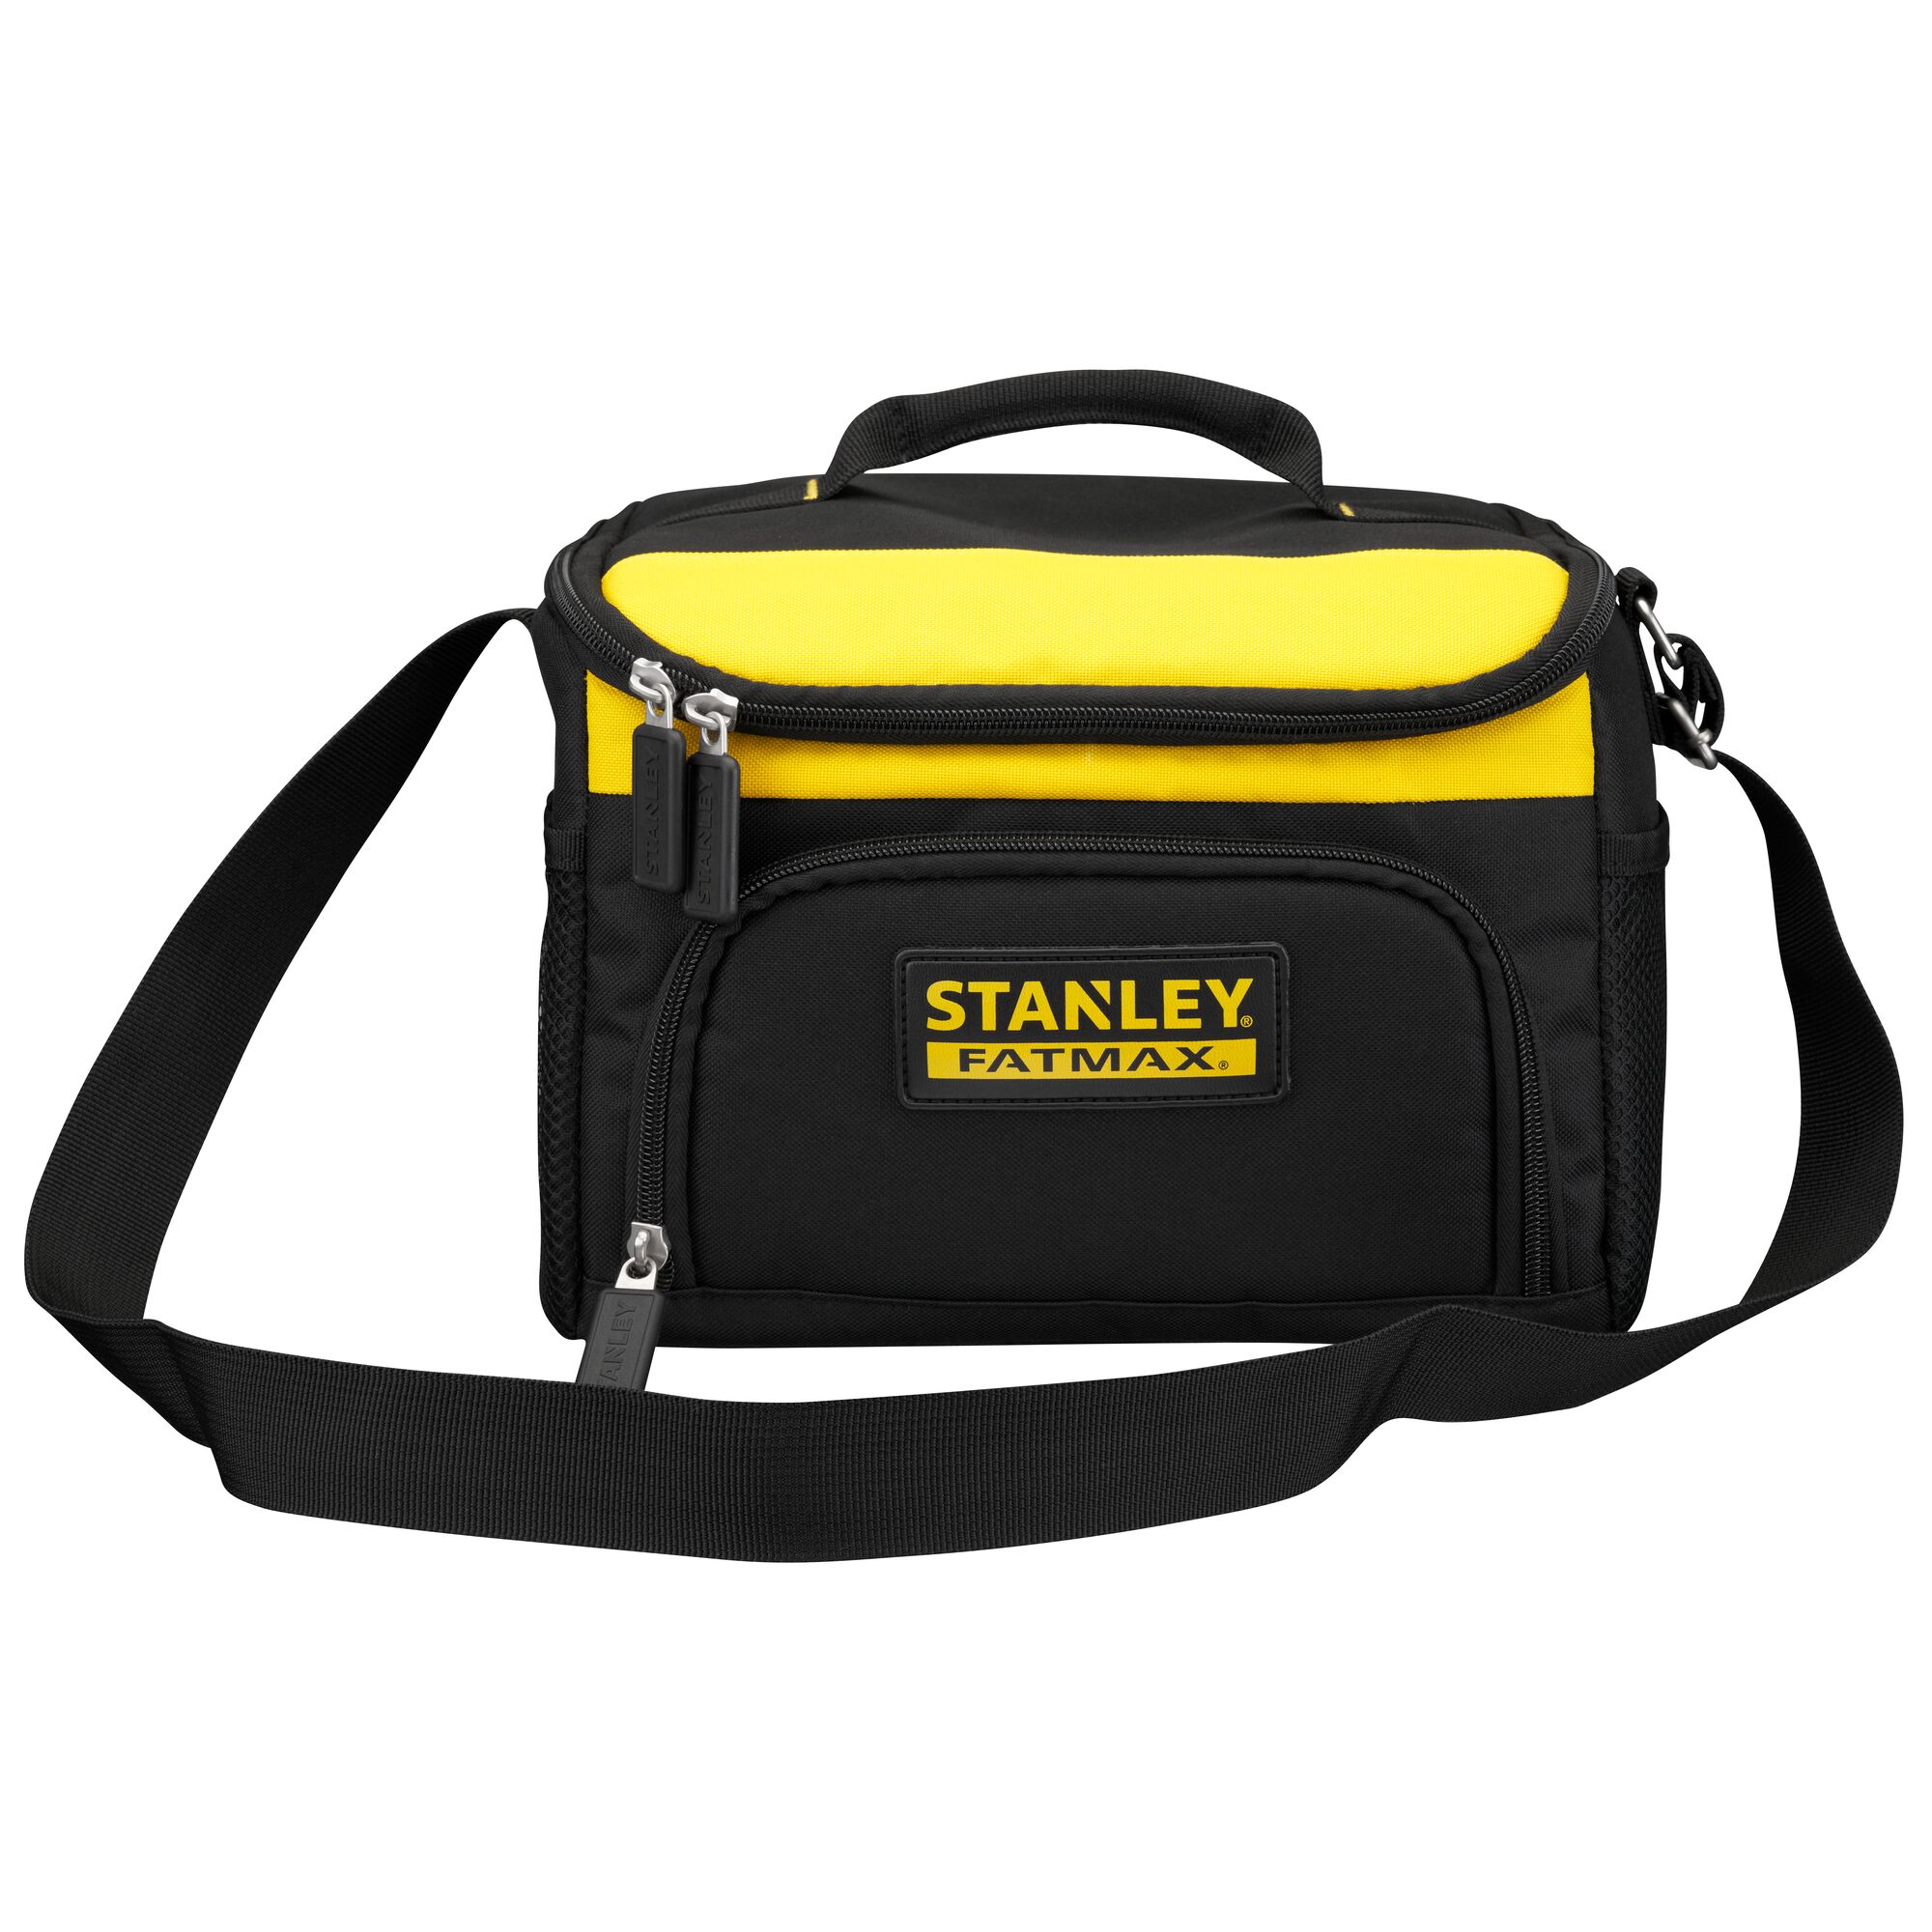 Stanley Bostitch Multi-Pocket Tool Bag Heavy Duty Nylon Black | eBay